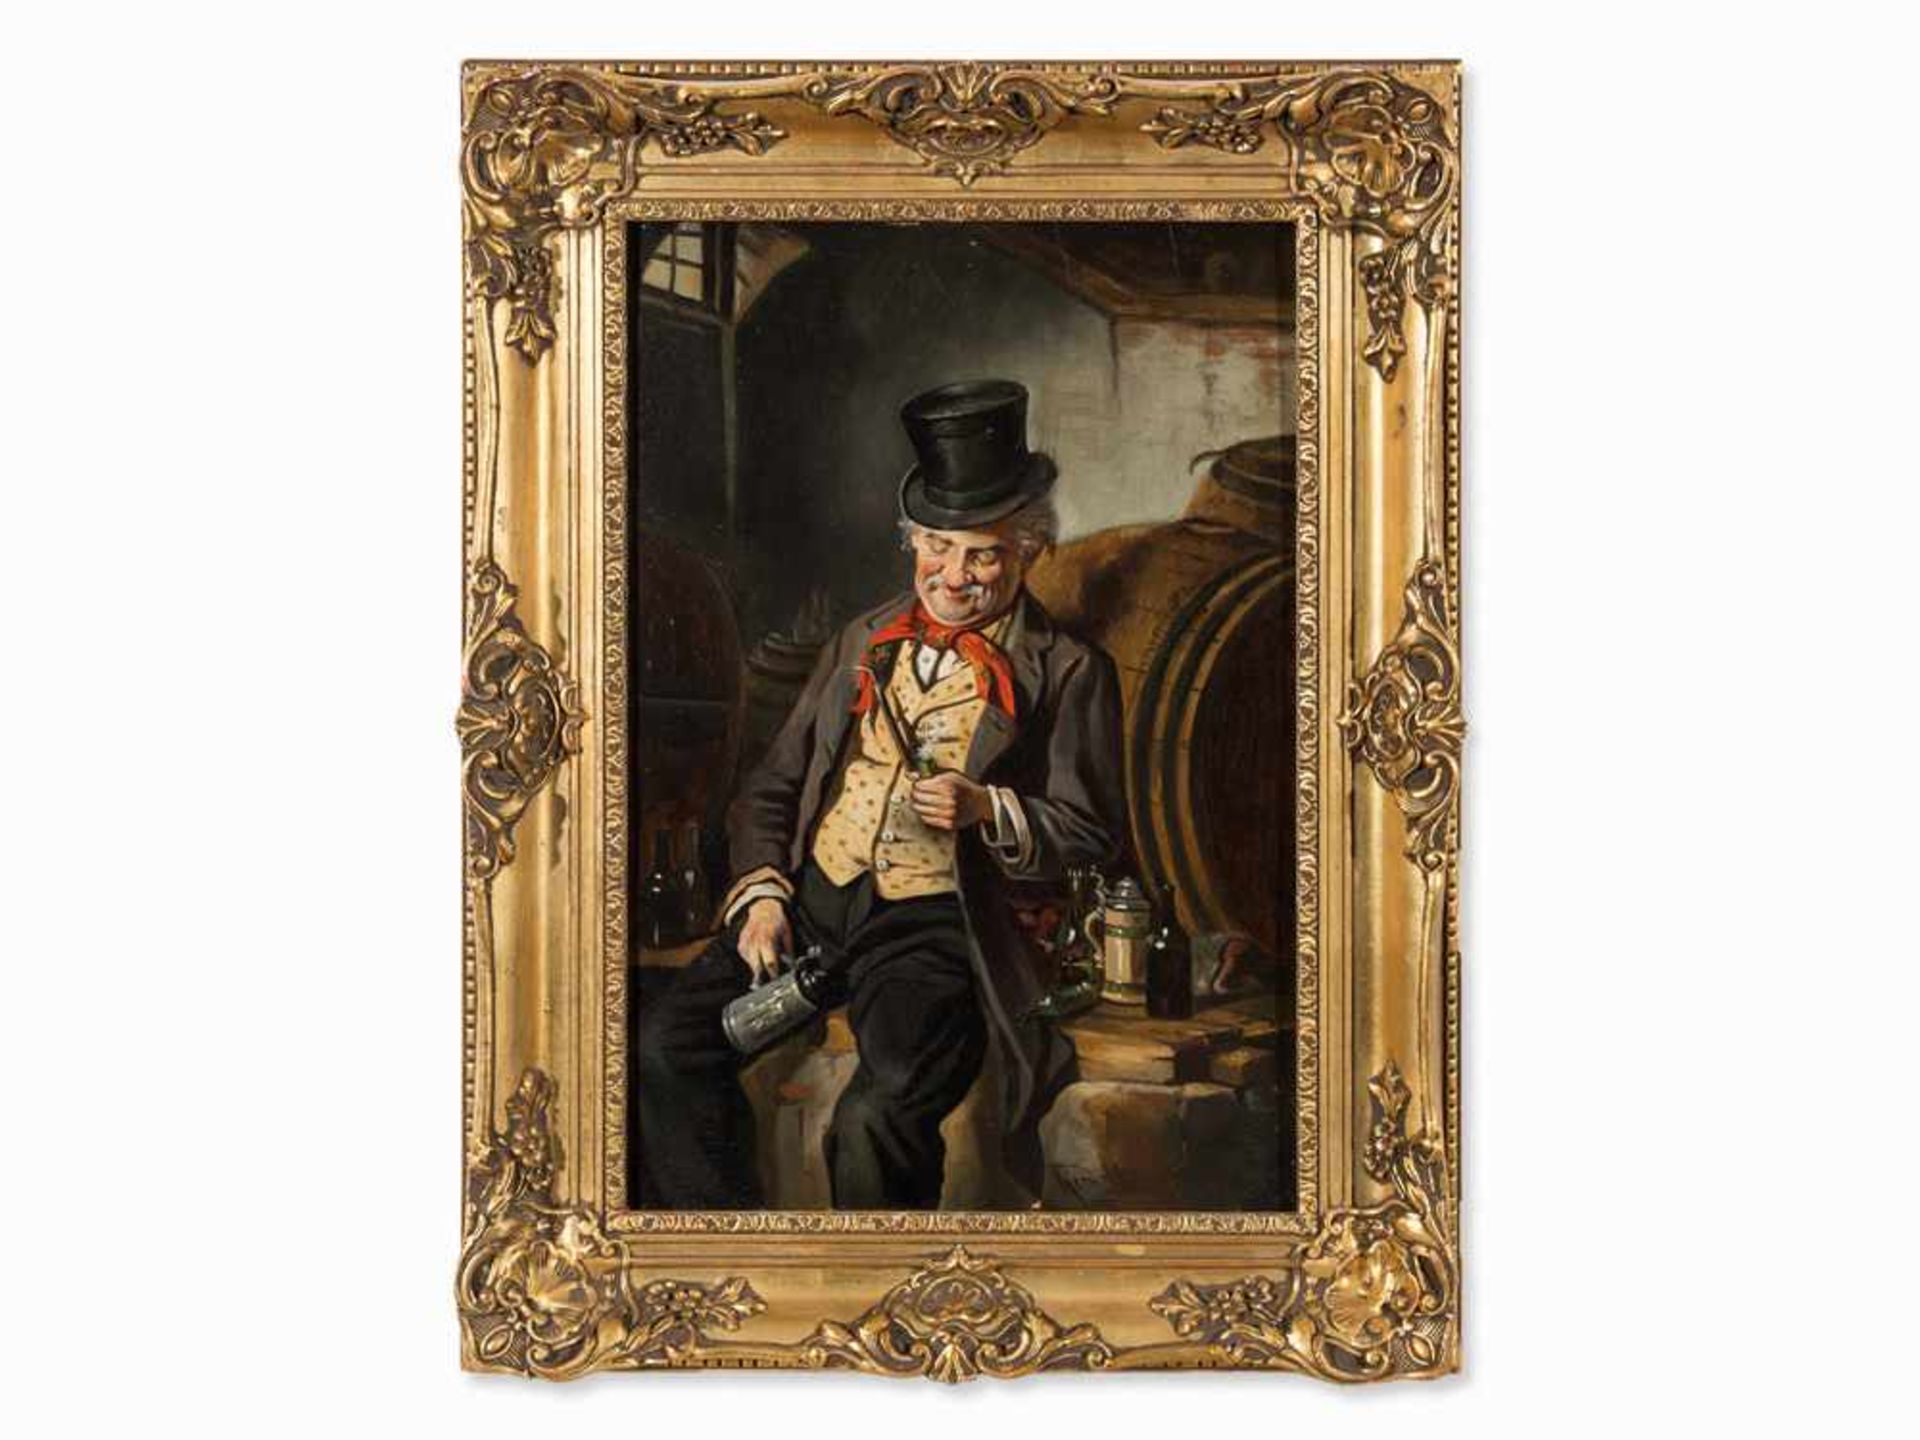 Hermann Kern (1838-1912), Die Weinprobe, Öl, um 1900 Öl auf holz. Österreich, um 1900. hermann